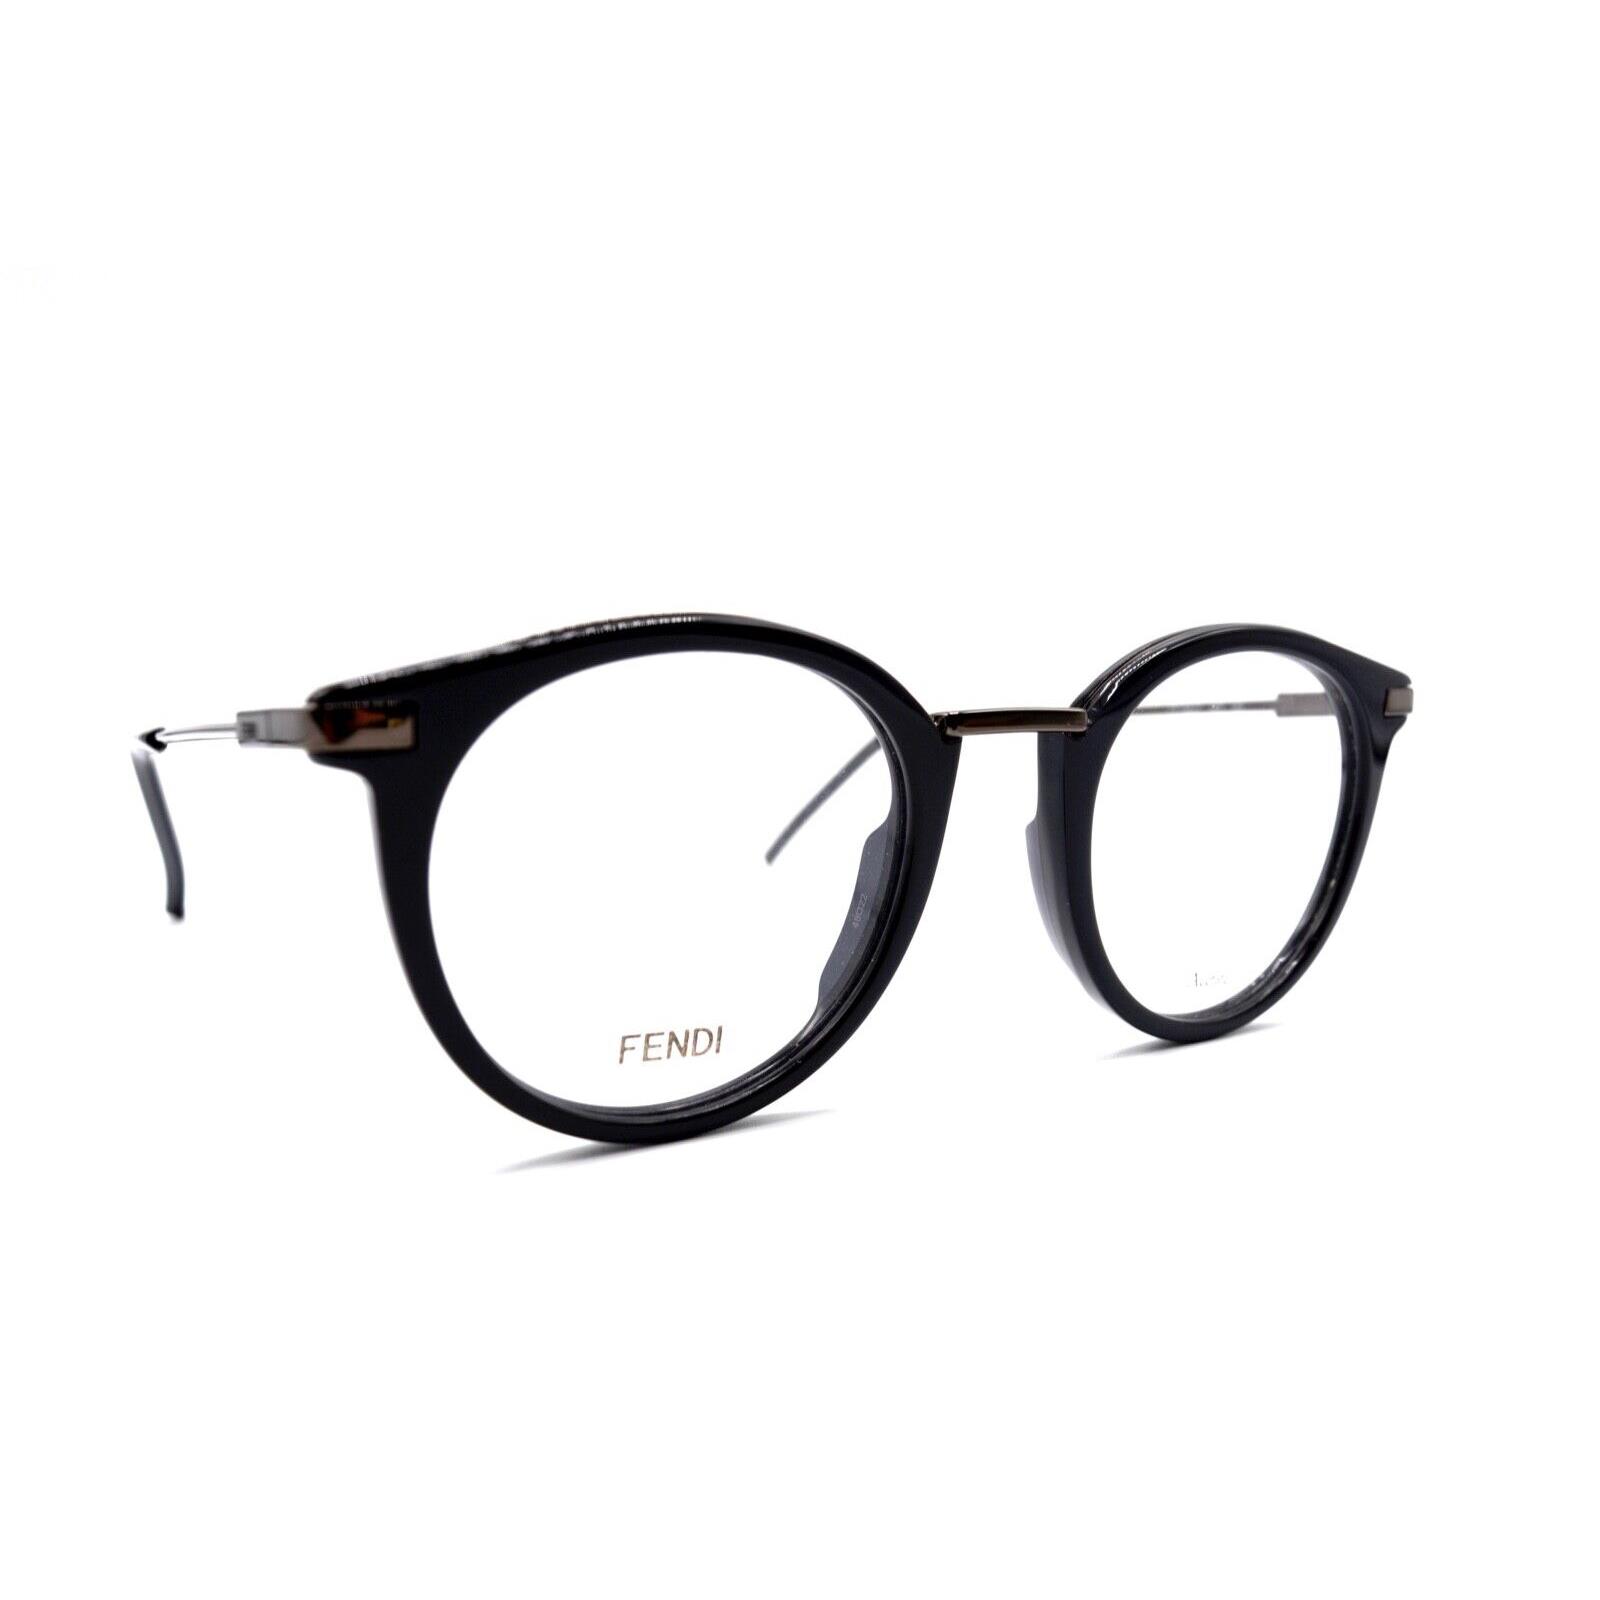 Fendi FF 0227 KB7 Grey Round Eyeglasses Frame RX 48-22 W/case 19F